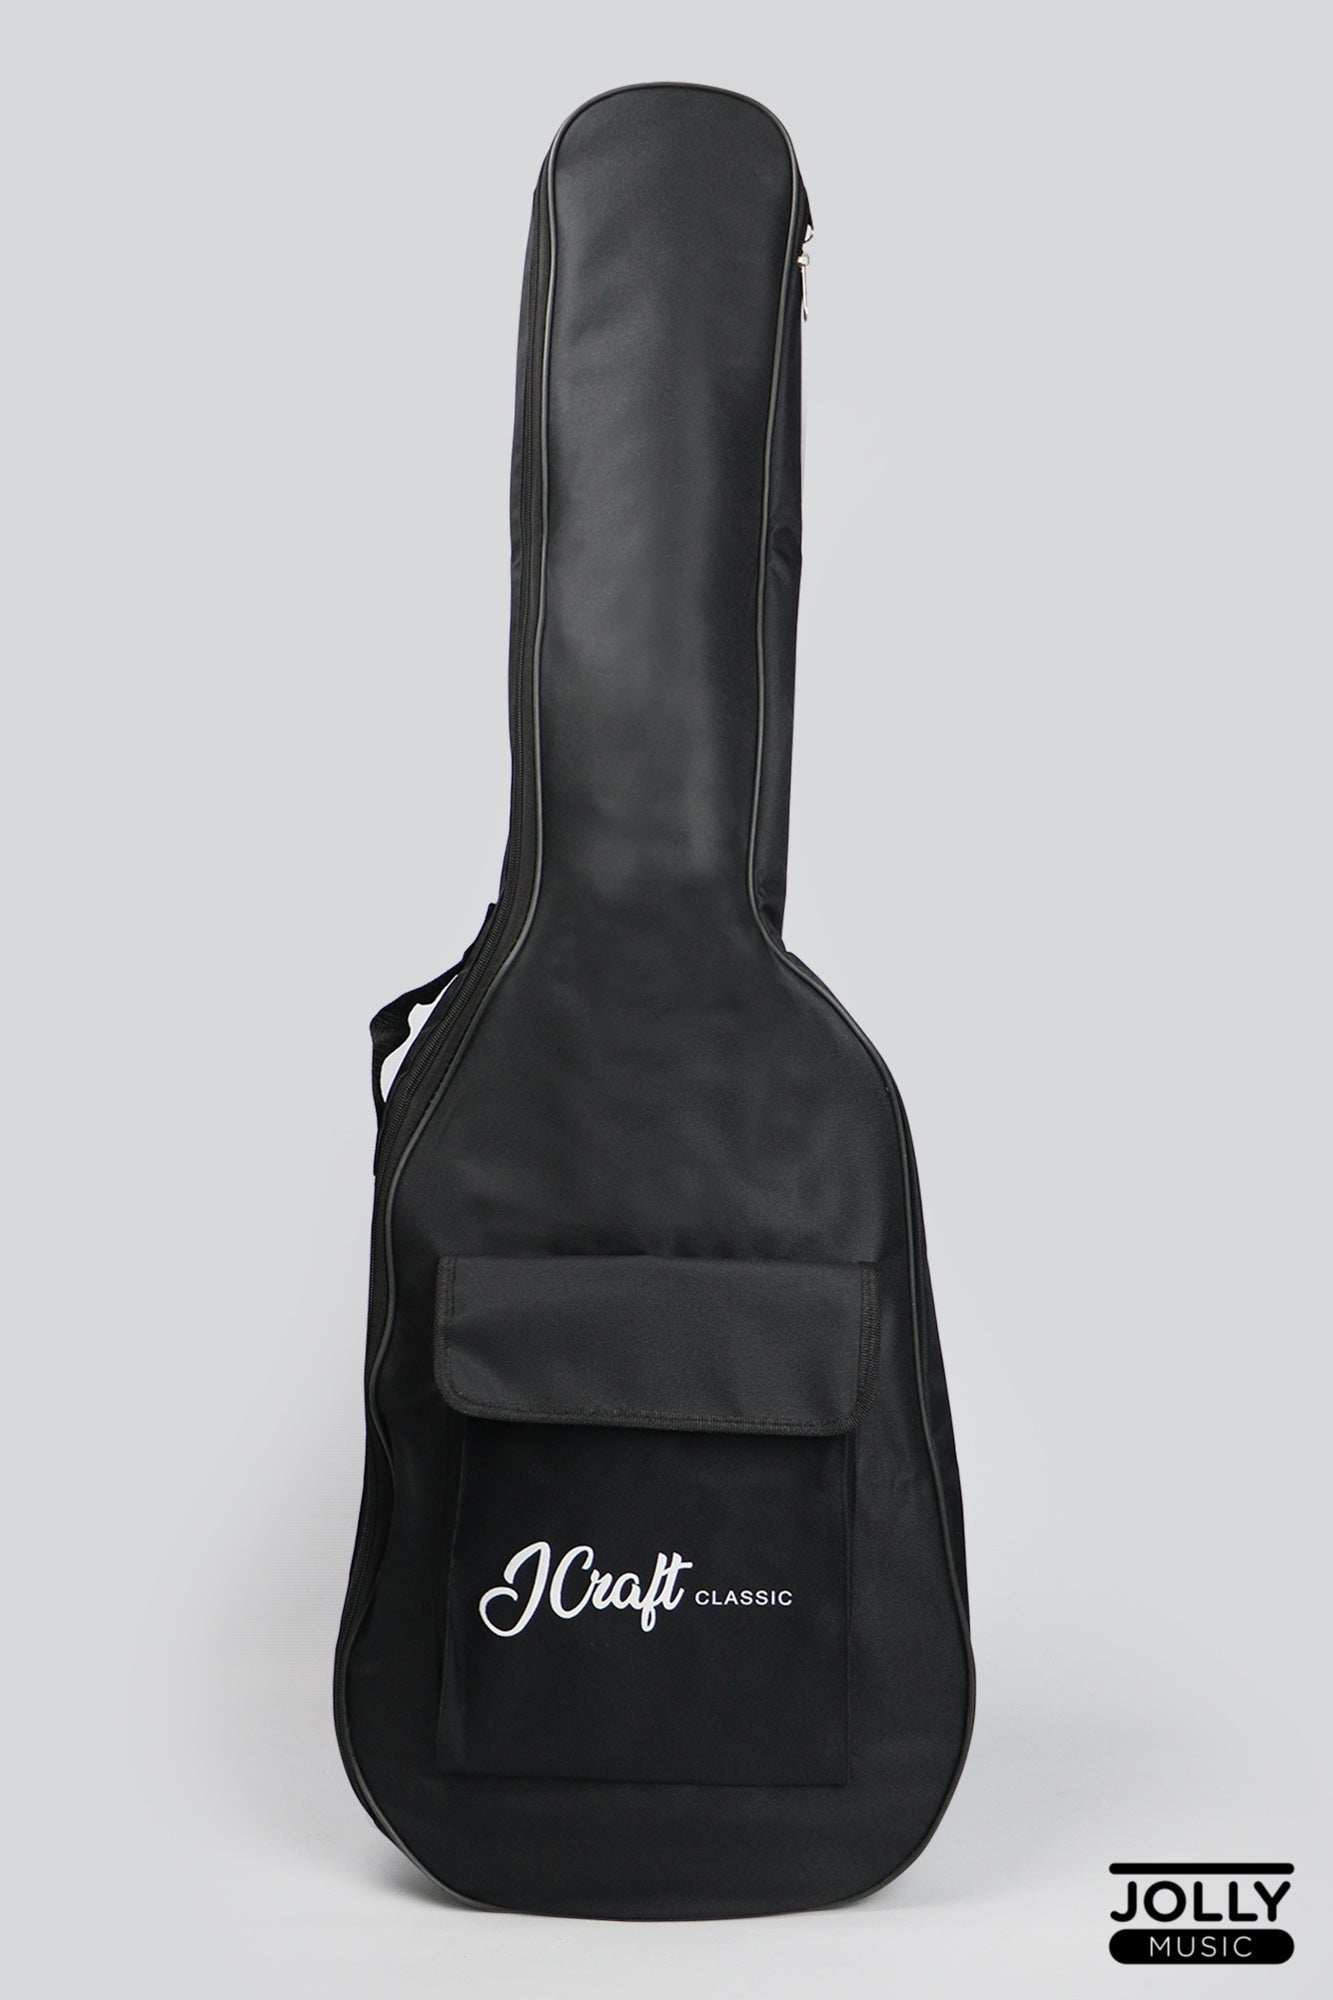 JCraft JB-1 J-Offset 4-String Bass Guitar with Gigbag - Natural